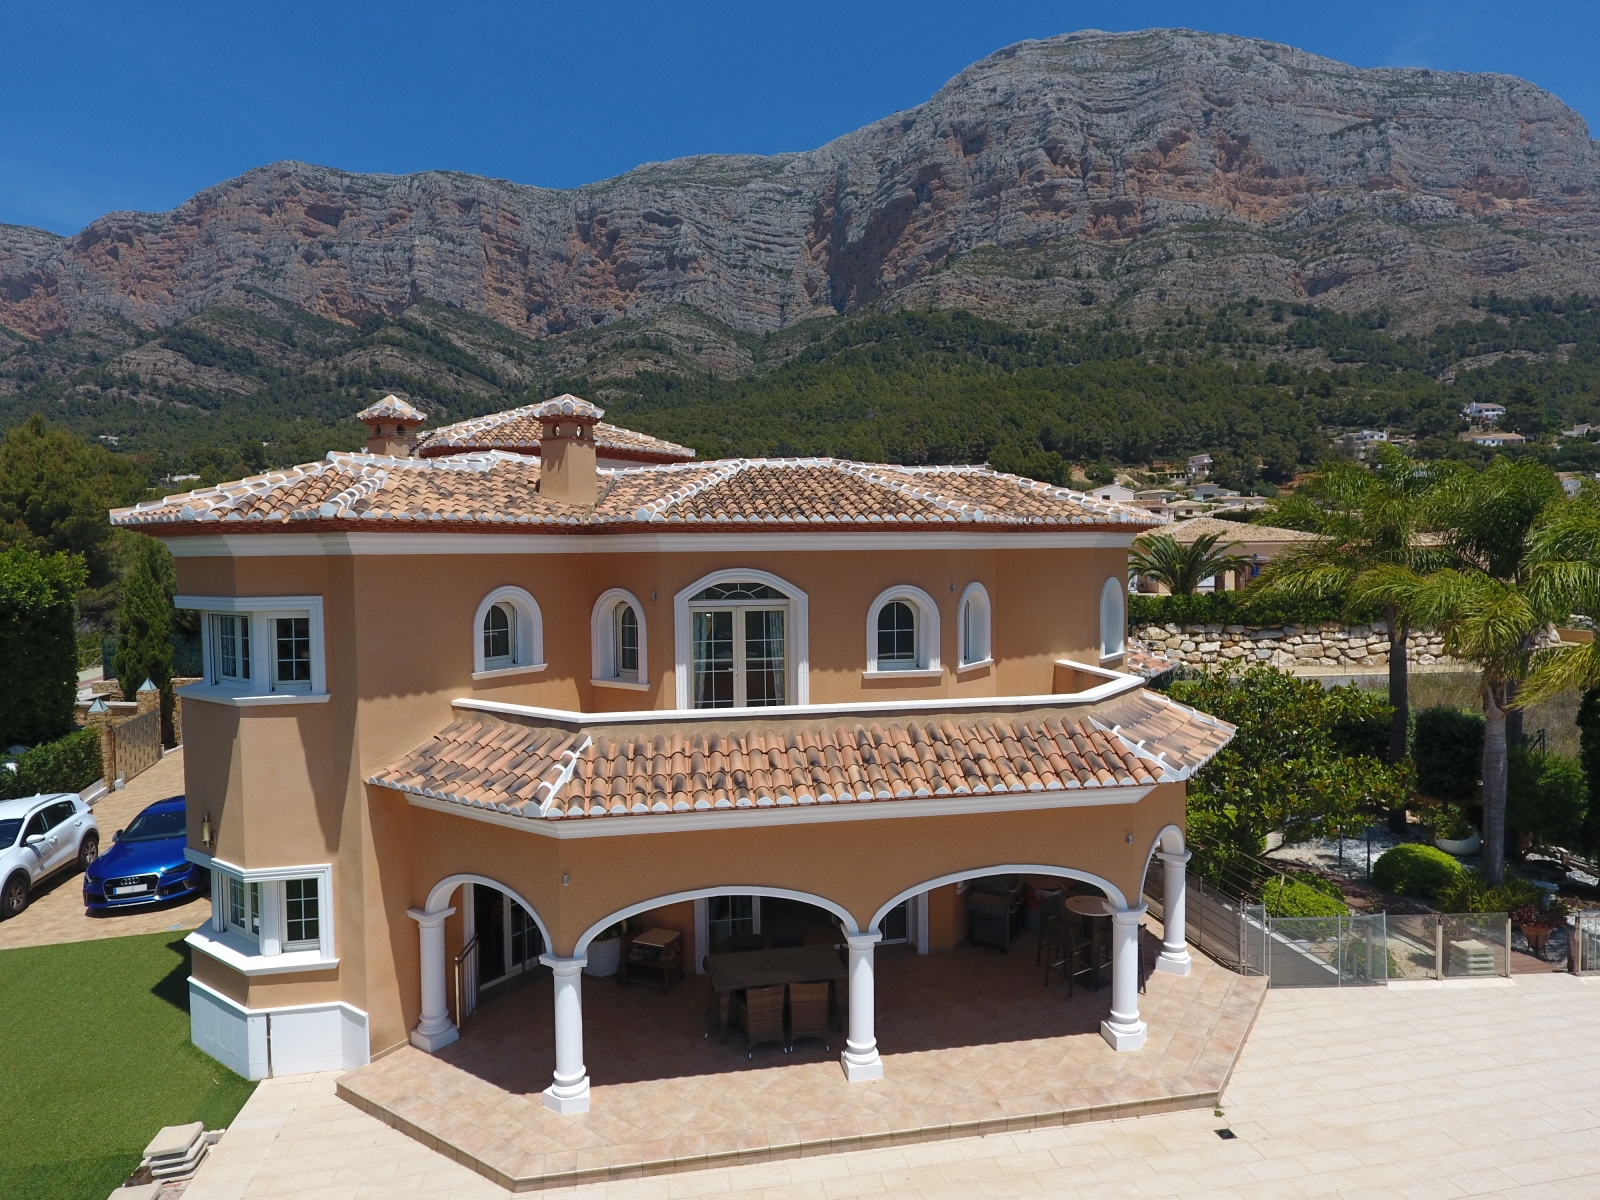 Villa de première qualité avec piscine à débordement, barbecue, aire de jeux, garage double, sous-sol, jardin, balcon, terrasse, rempli de détails, sur le côté sud de Montgó.